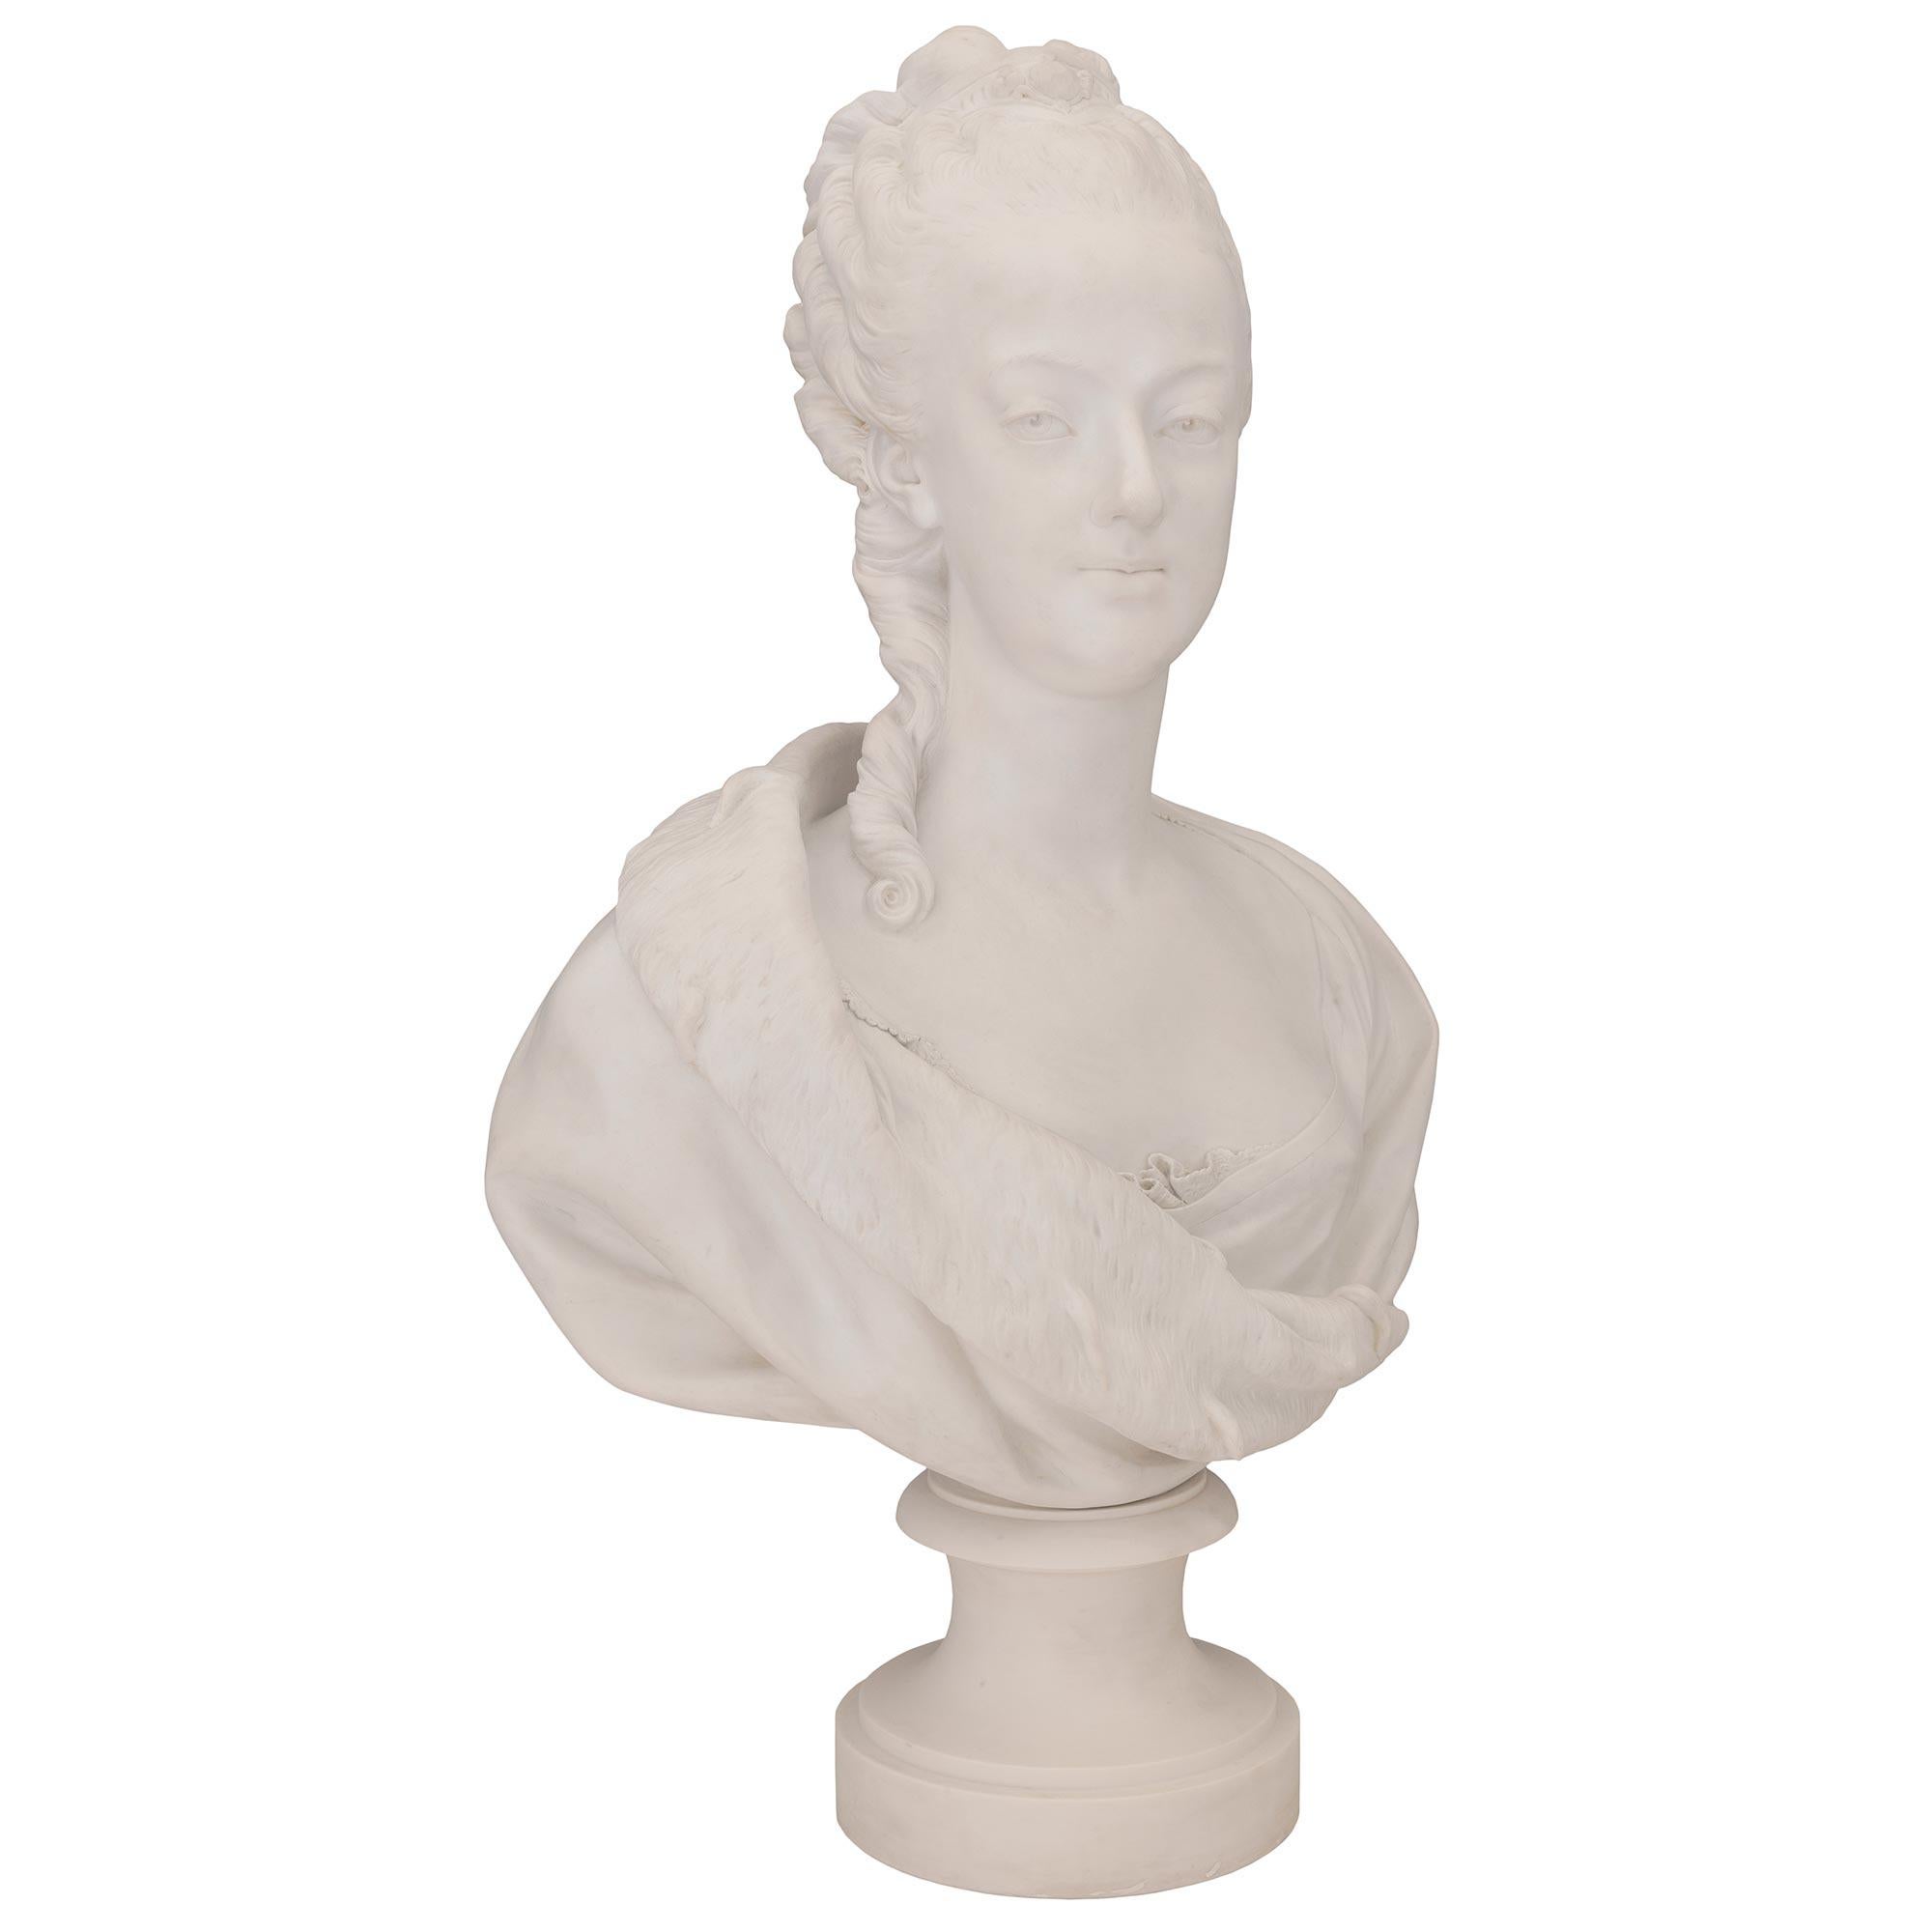 Buste de Marie-Antoinette en porcelaine de Sèvres de style Louis XVI, élégant et de grande qualité, datant du XIXe siècle. Le buste est surélevé par une base circulaire en forme de socle avec une bordure enveloppante finement marbrée. Au-dessus se